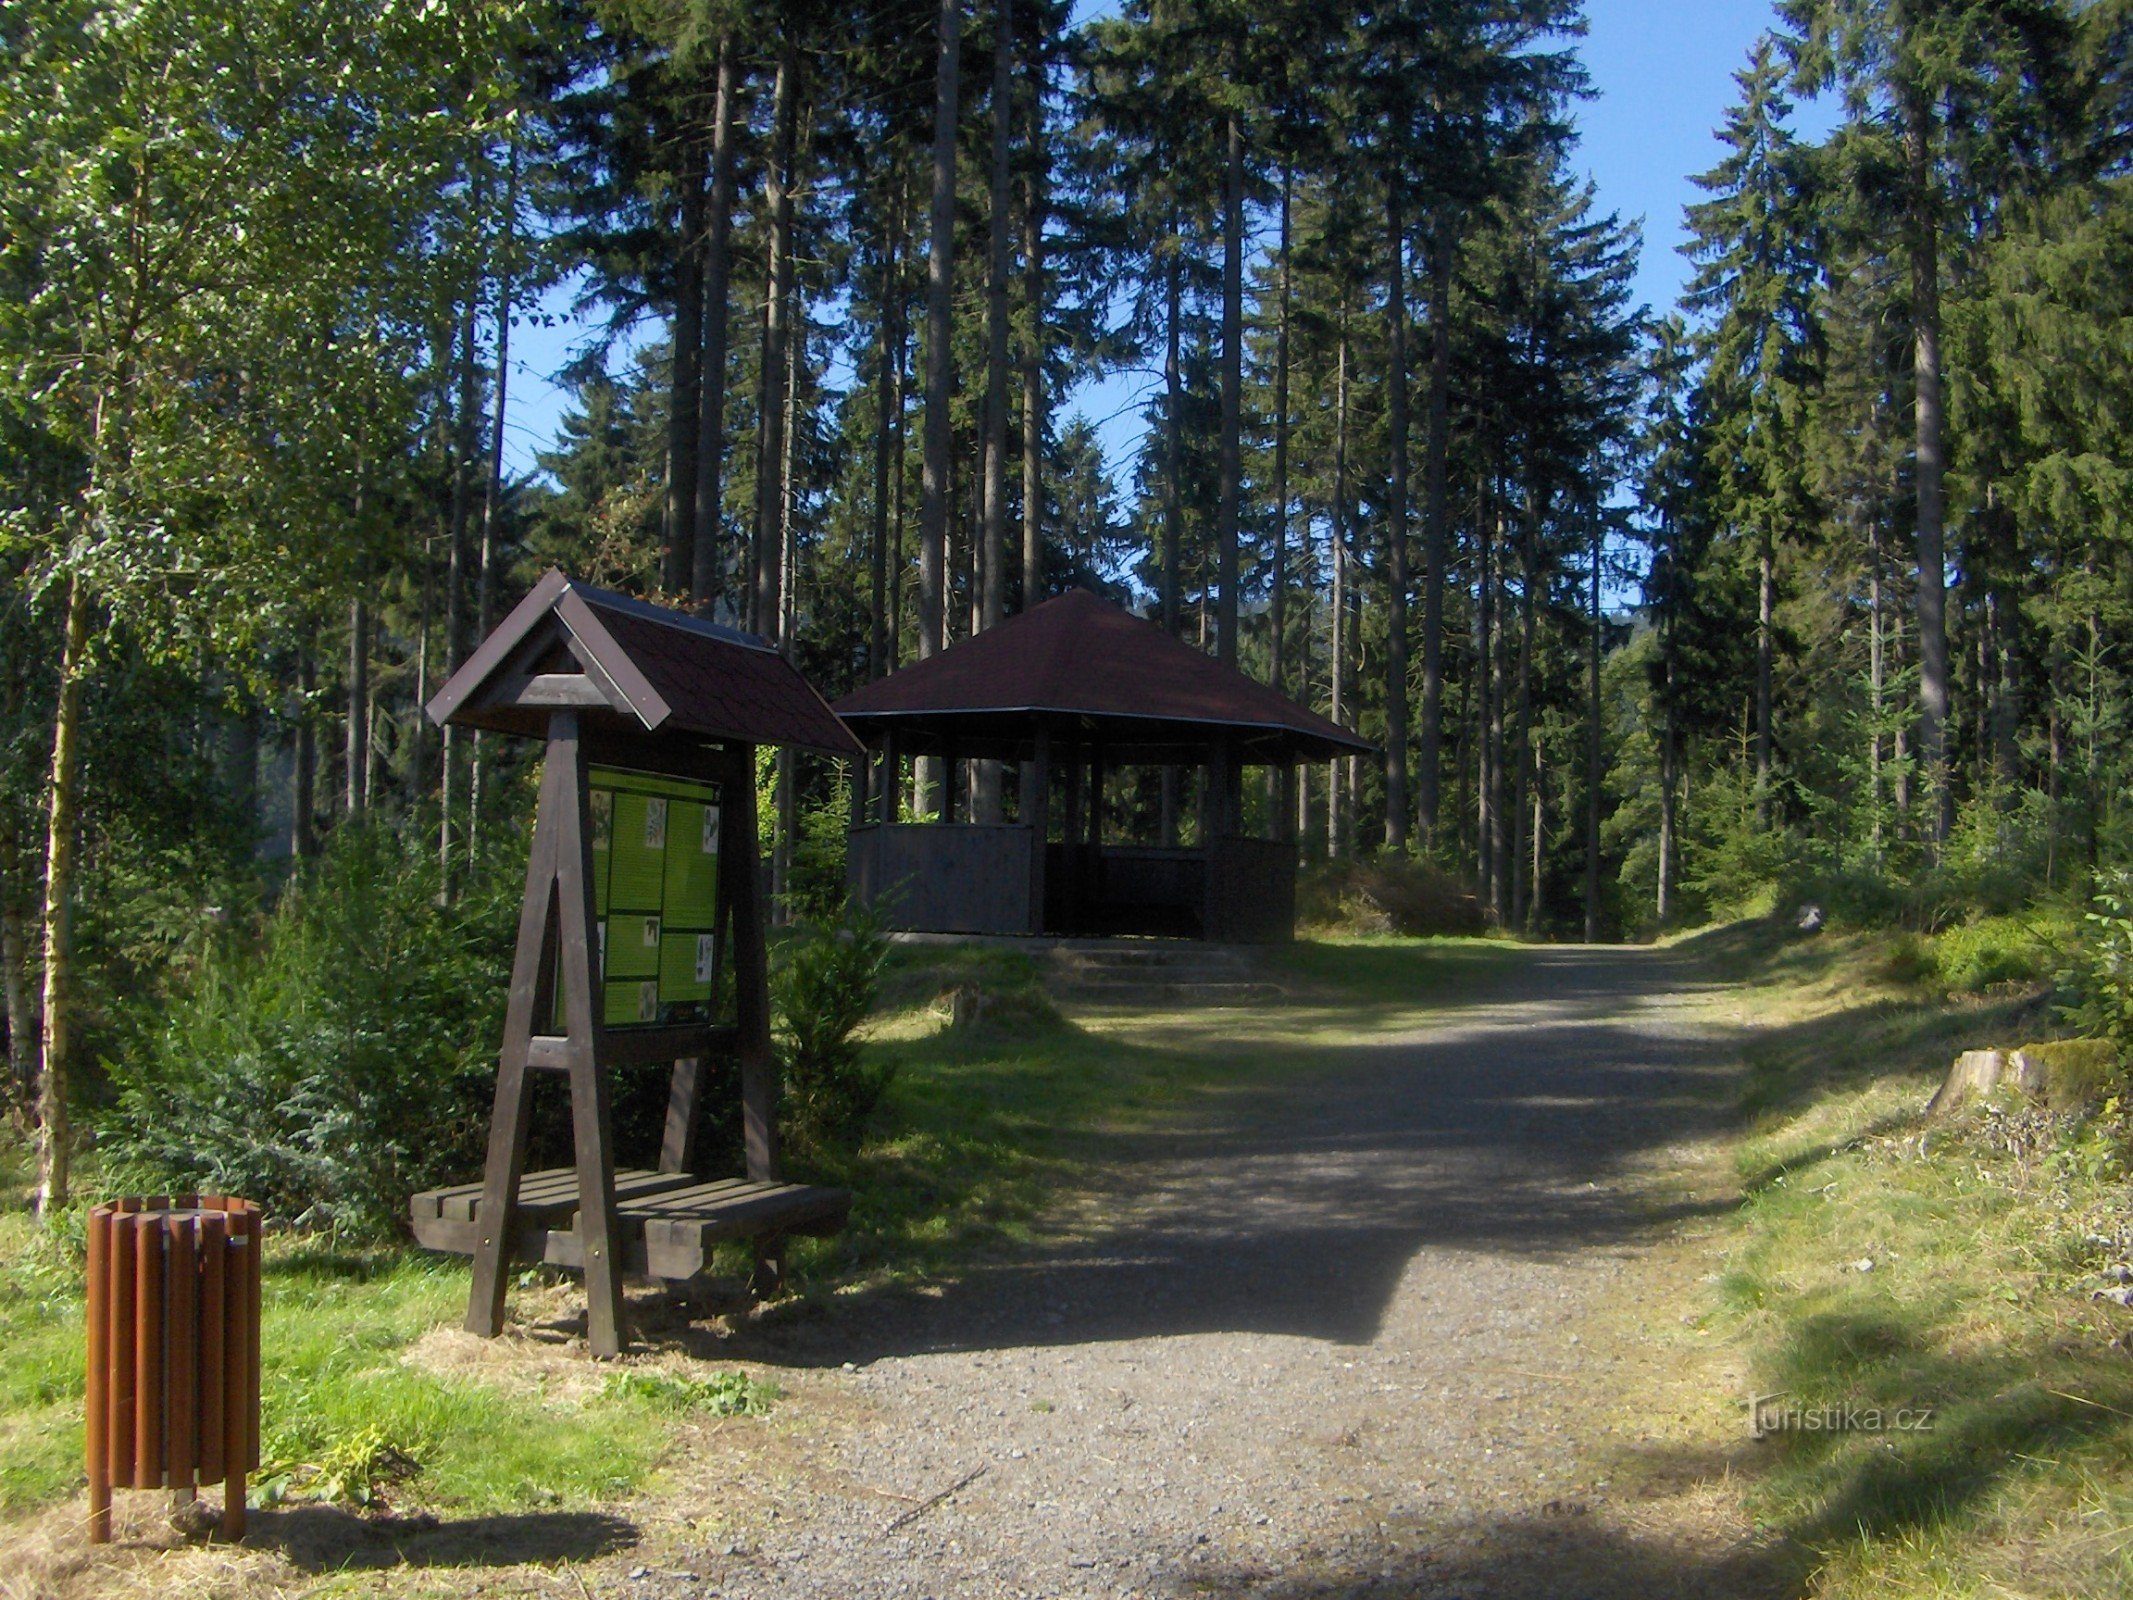 công viên rừng Pernink